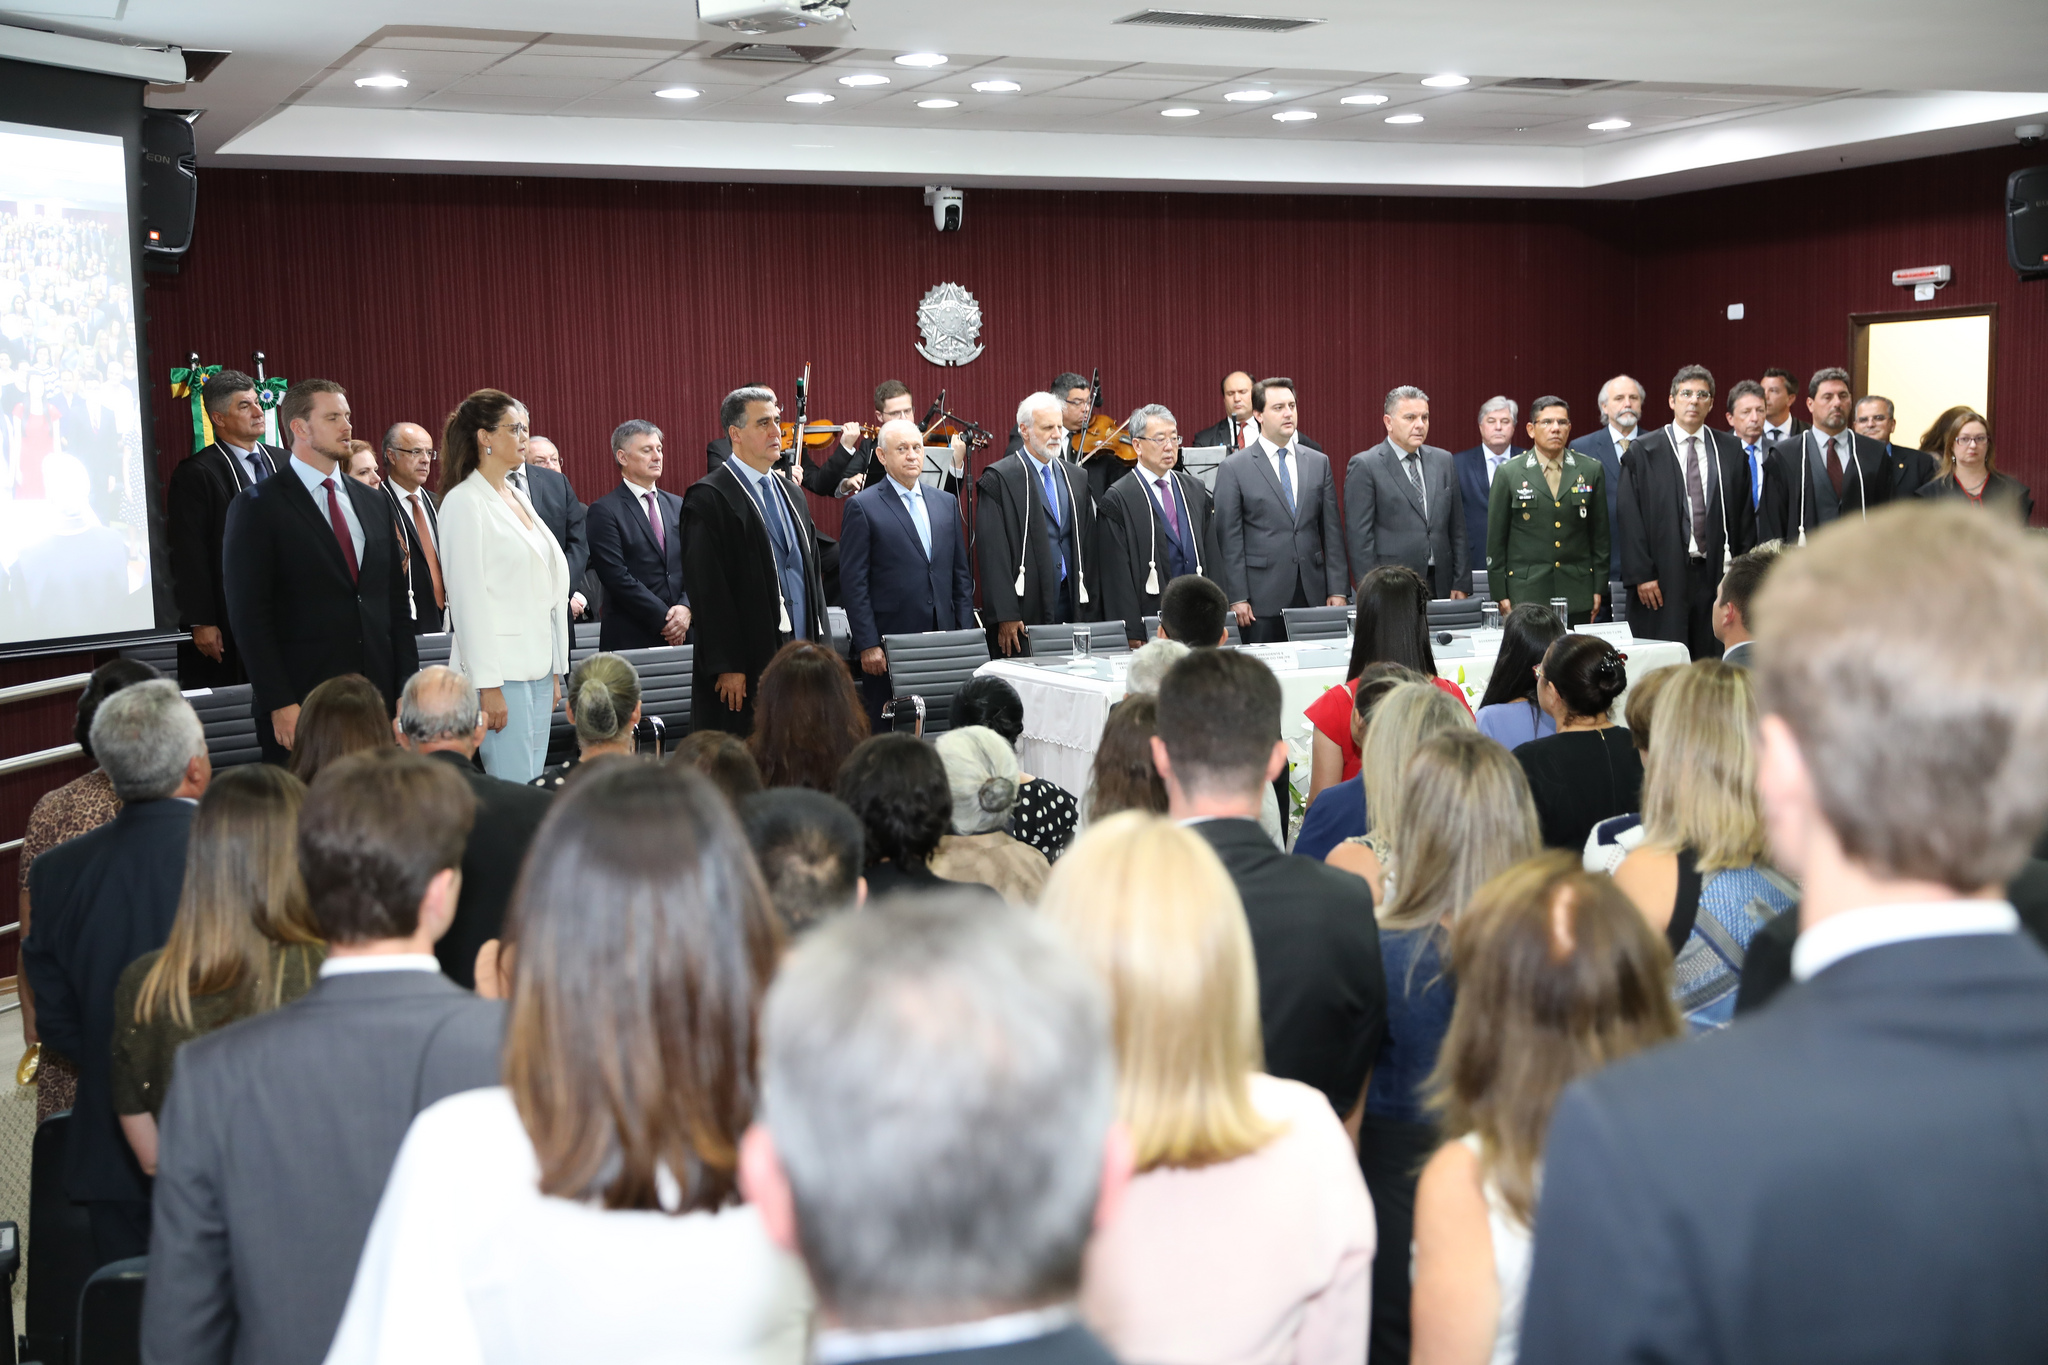 TRE-PR on X: 🤔Já assistiu a uma cerimônia solene de posse? 💁 Hoje, às  14h, toma posse a nova juíza da corte do Tribunal Regional Eleitoral do  Paraná (TREPR), Dra. Flávia da